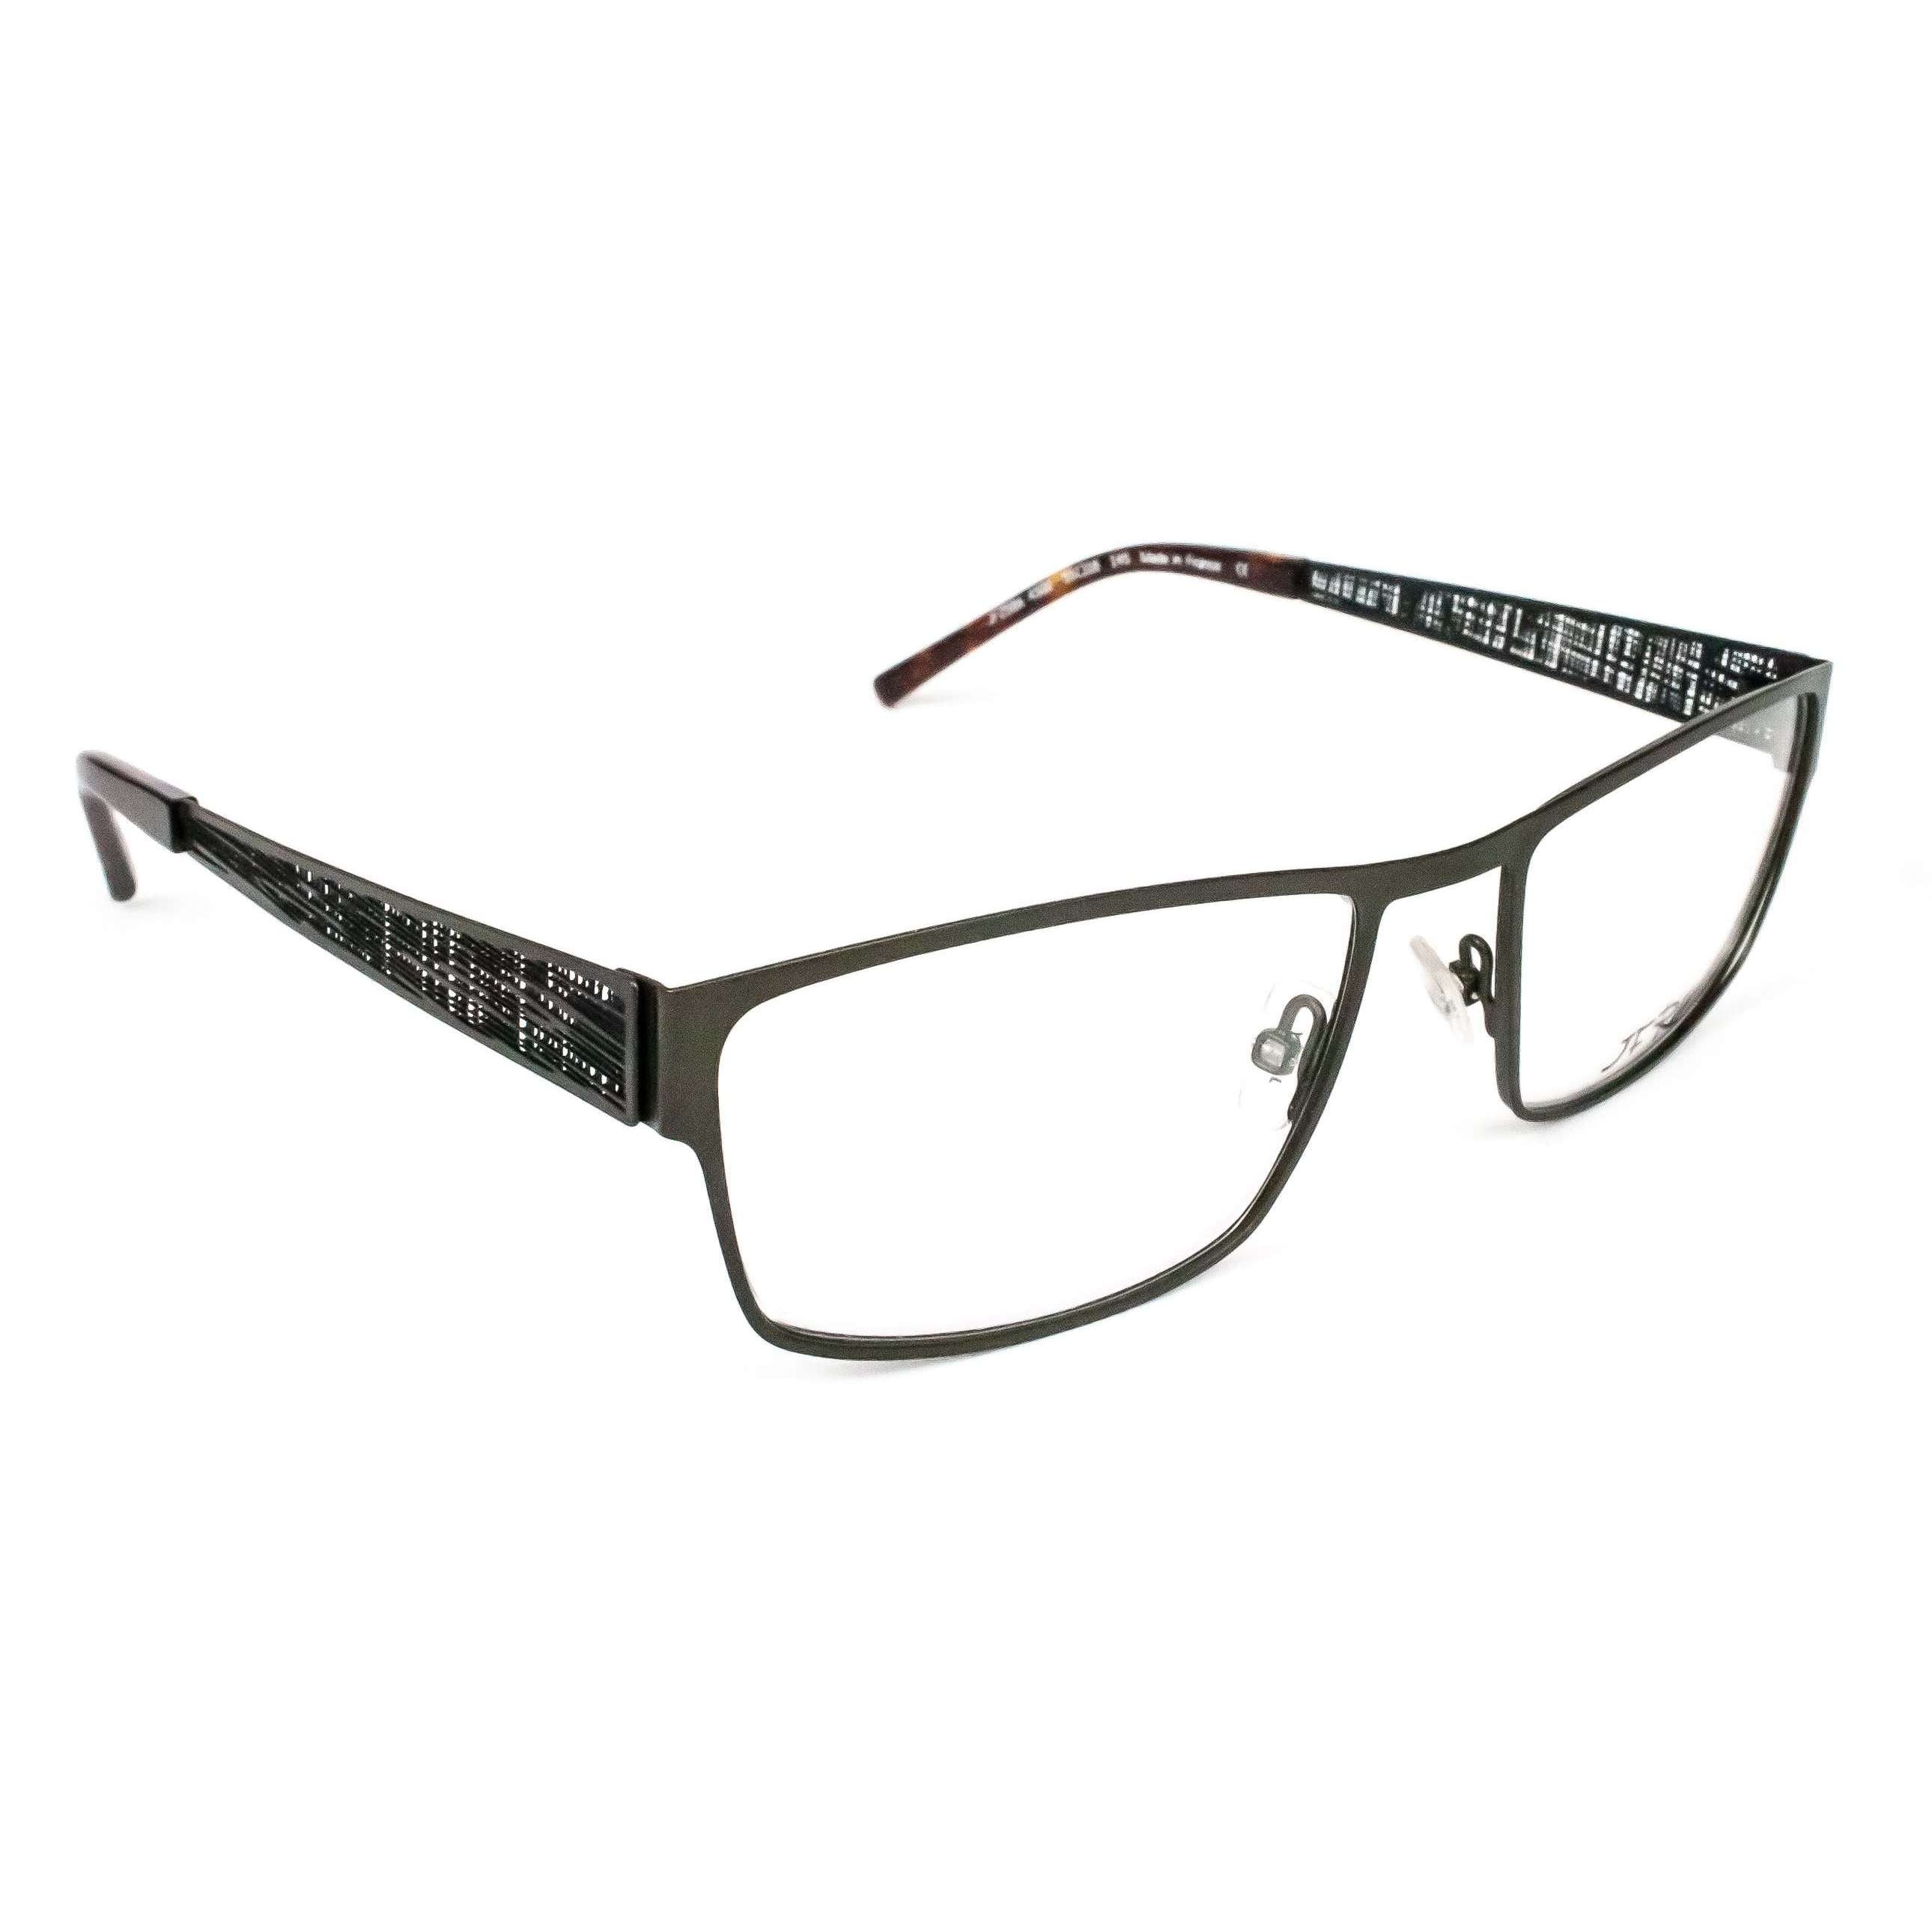 JF Rey Model 2586 Square Glasses